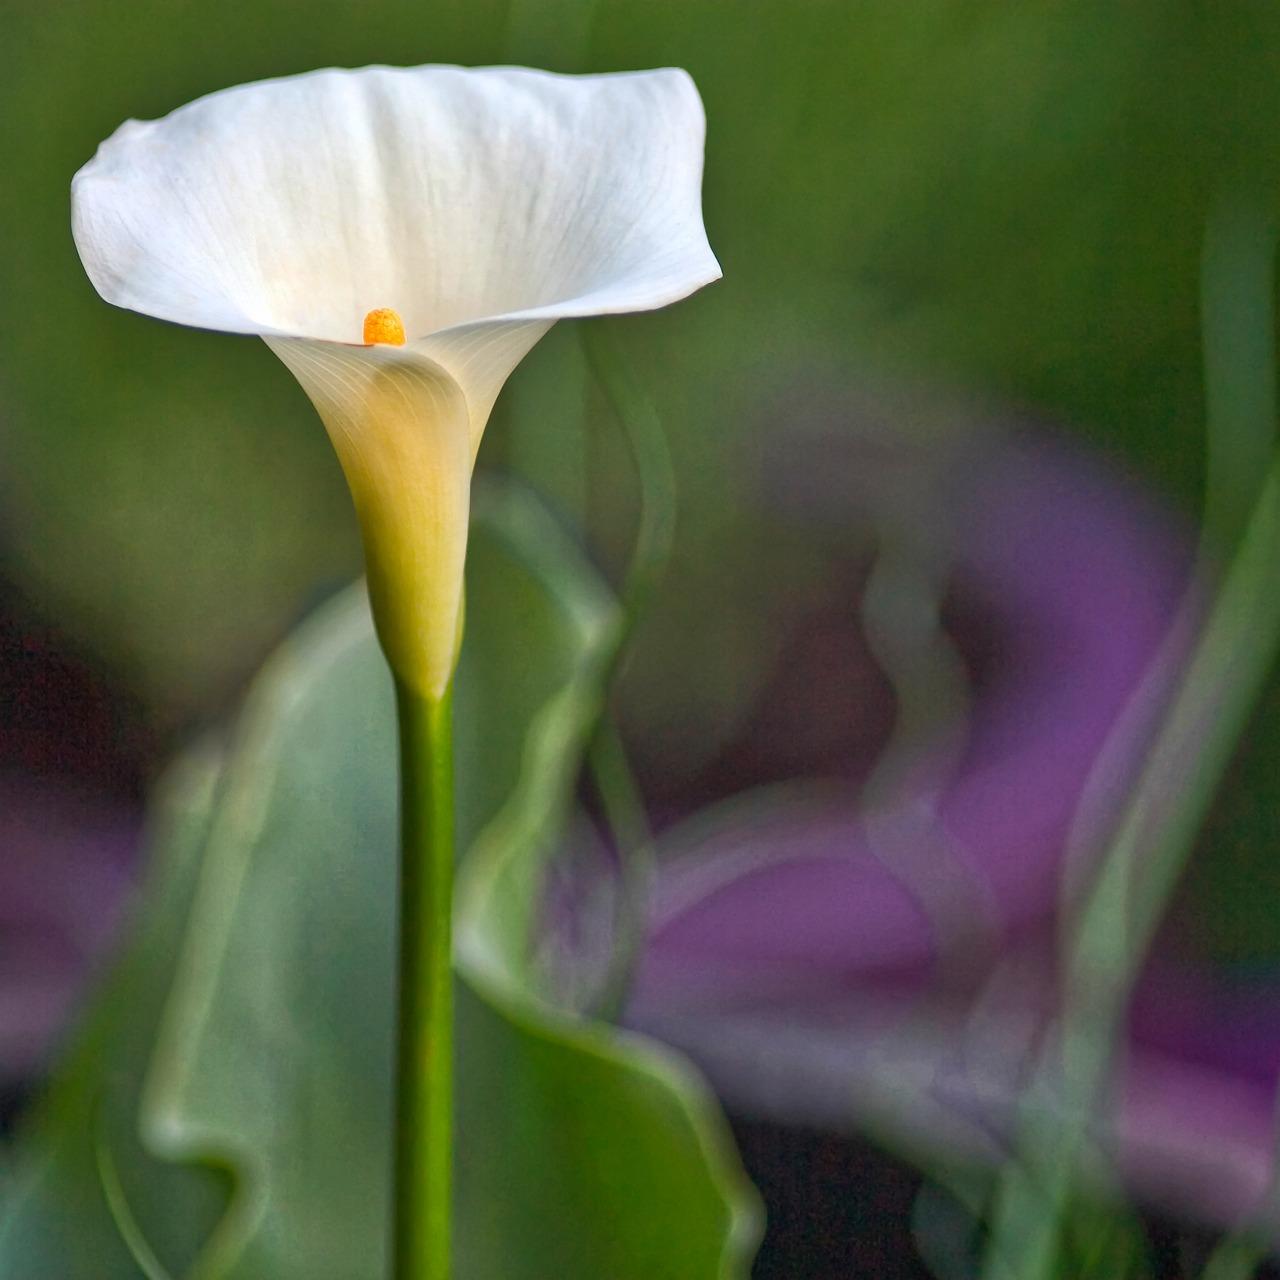  Ceașcă de lapte colorată: învață cum să crești această mică plantă!